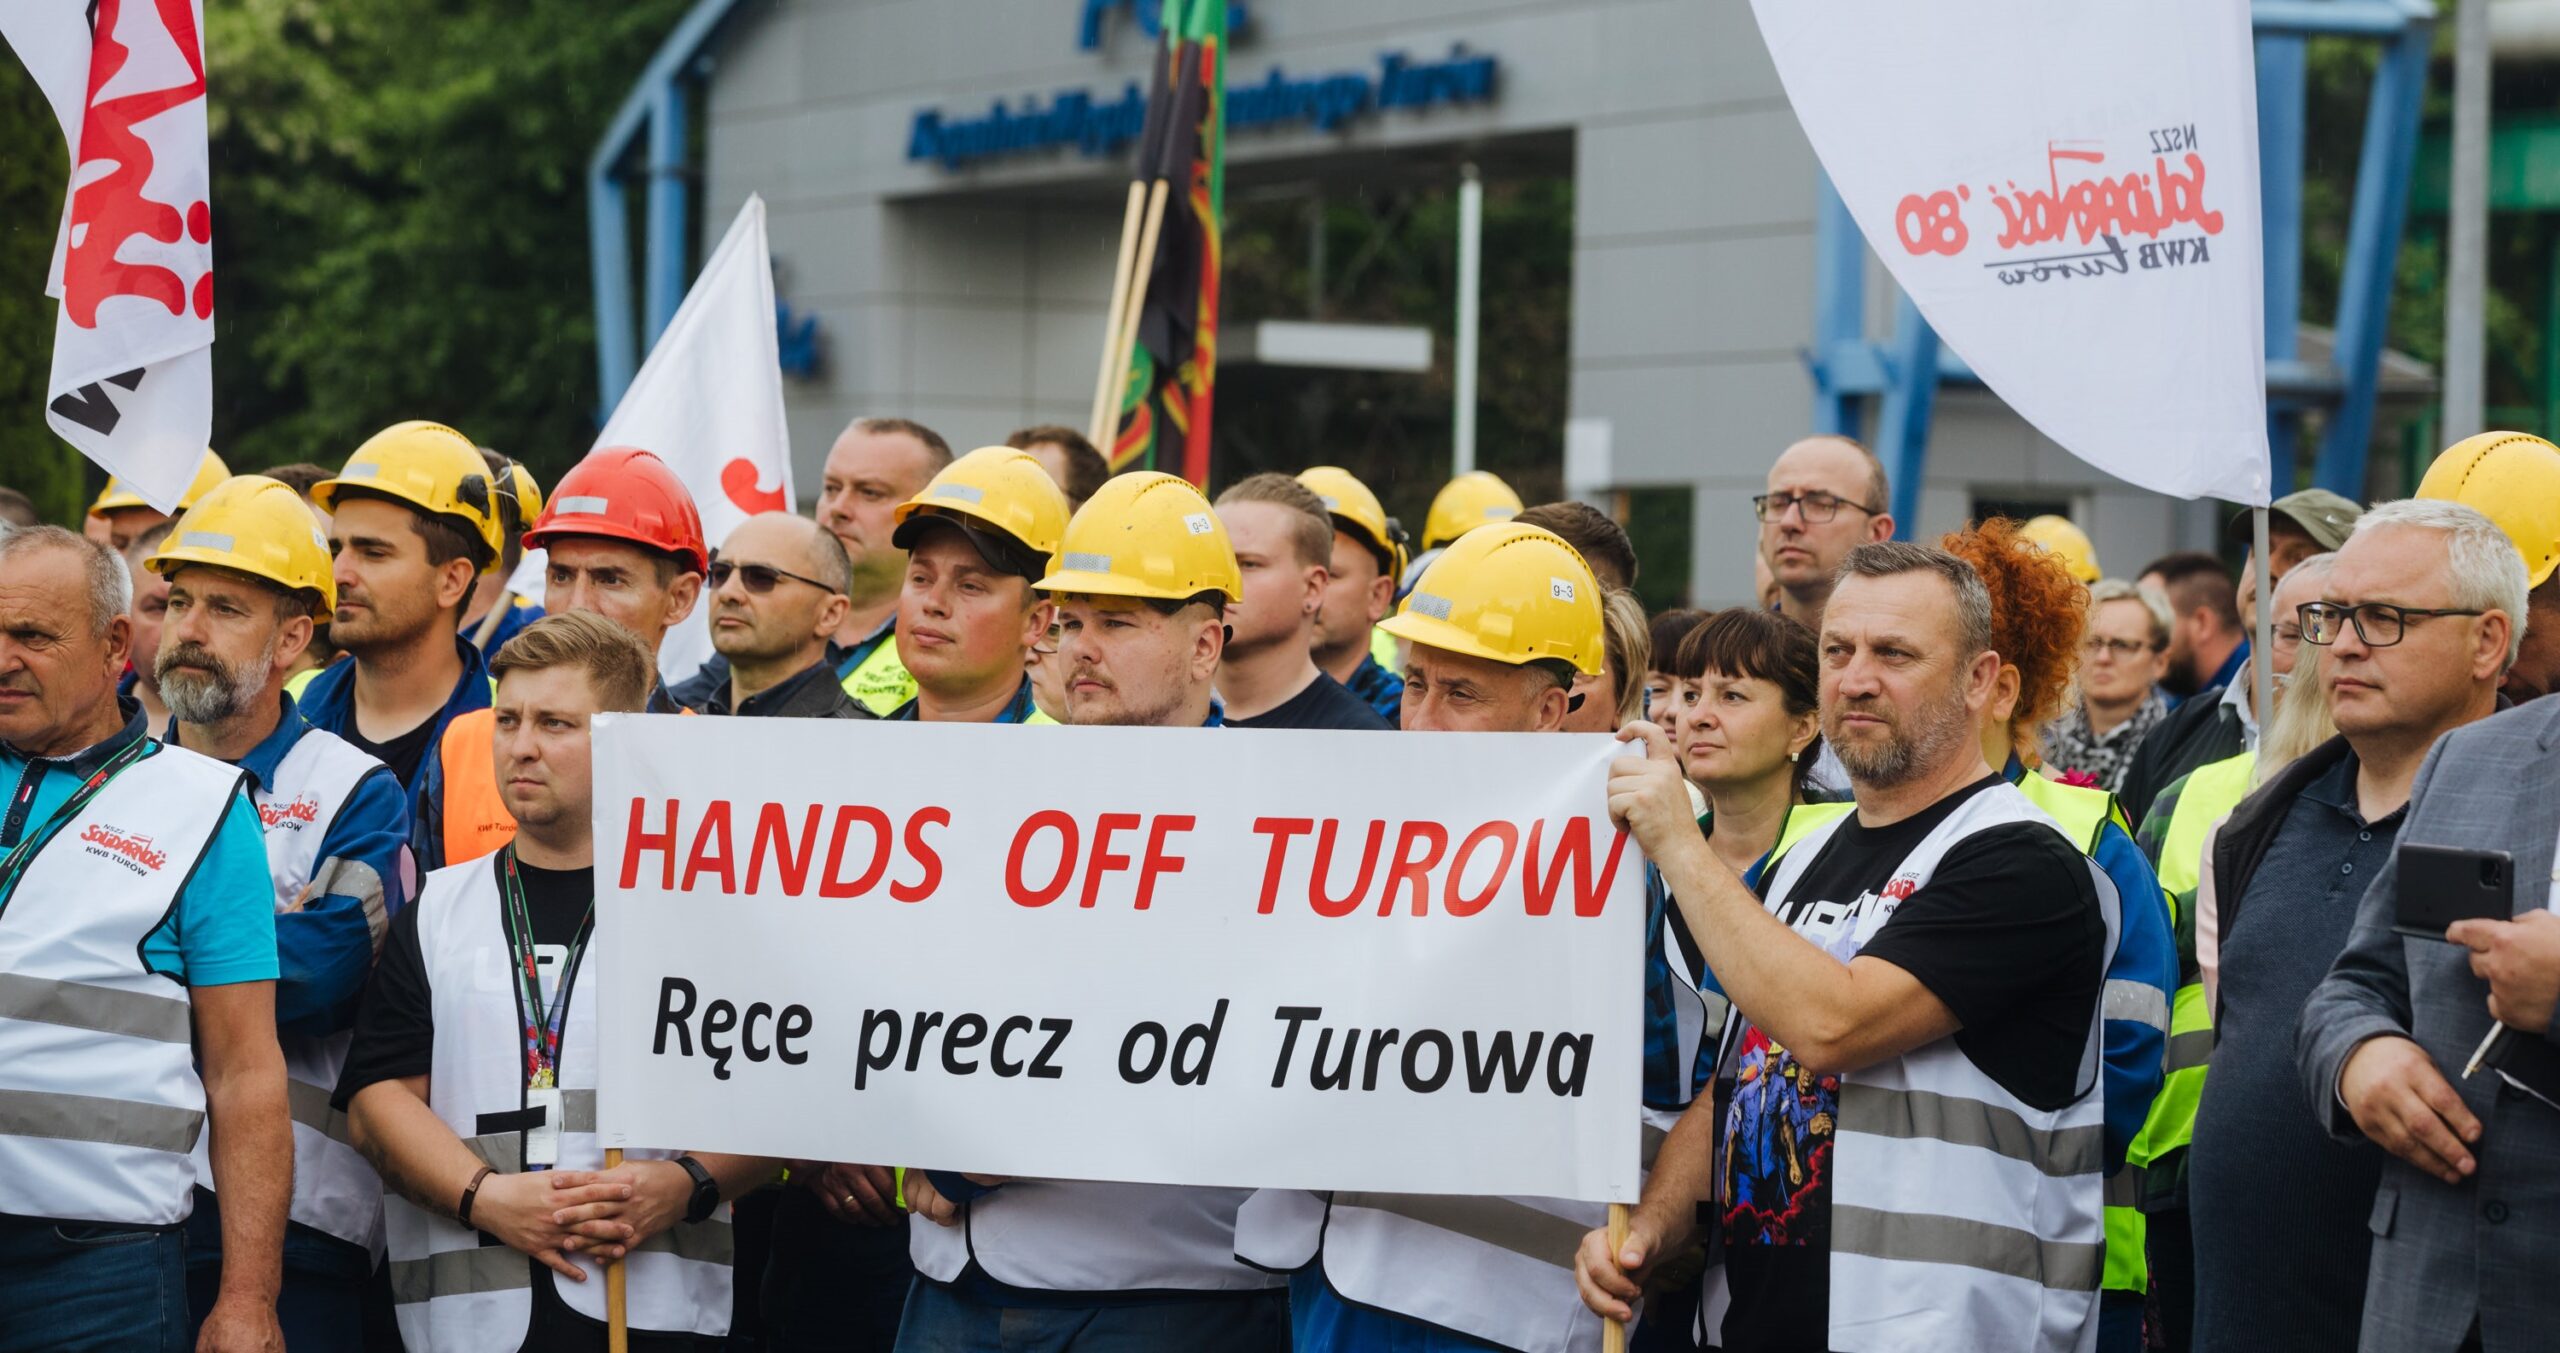 Polski rząd za decyzję przeciwko kopalni obwinia „zagraniczne interesy”.